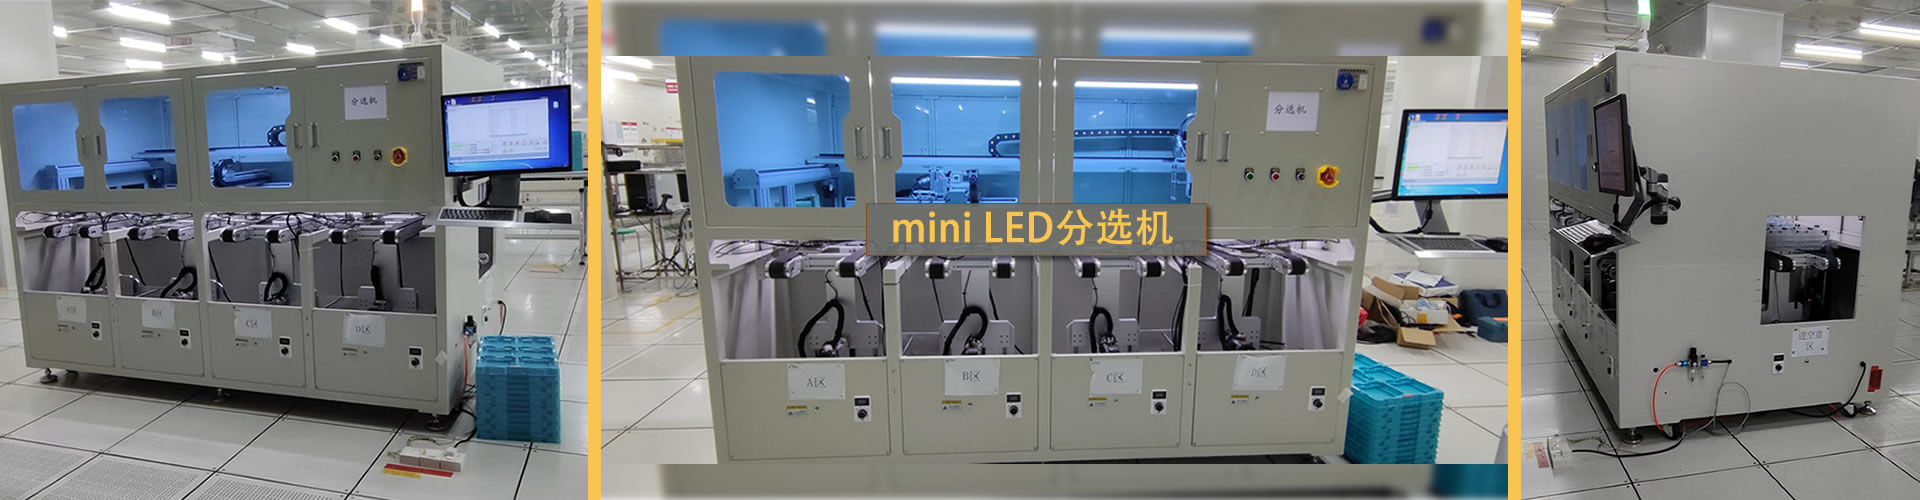 mini LED分选机